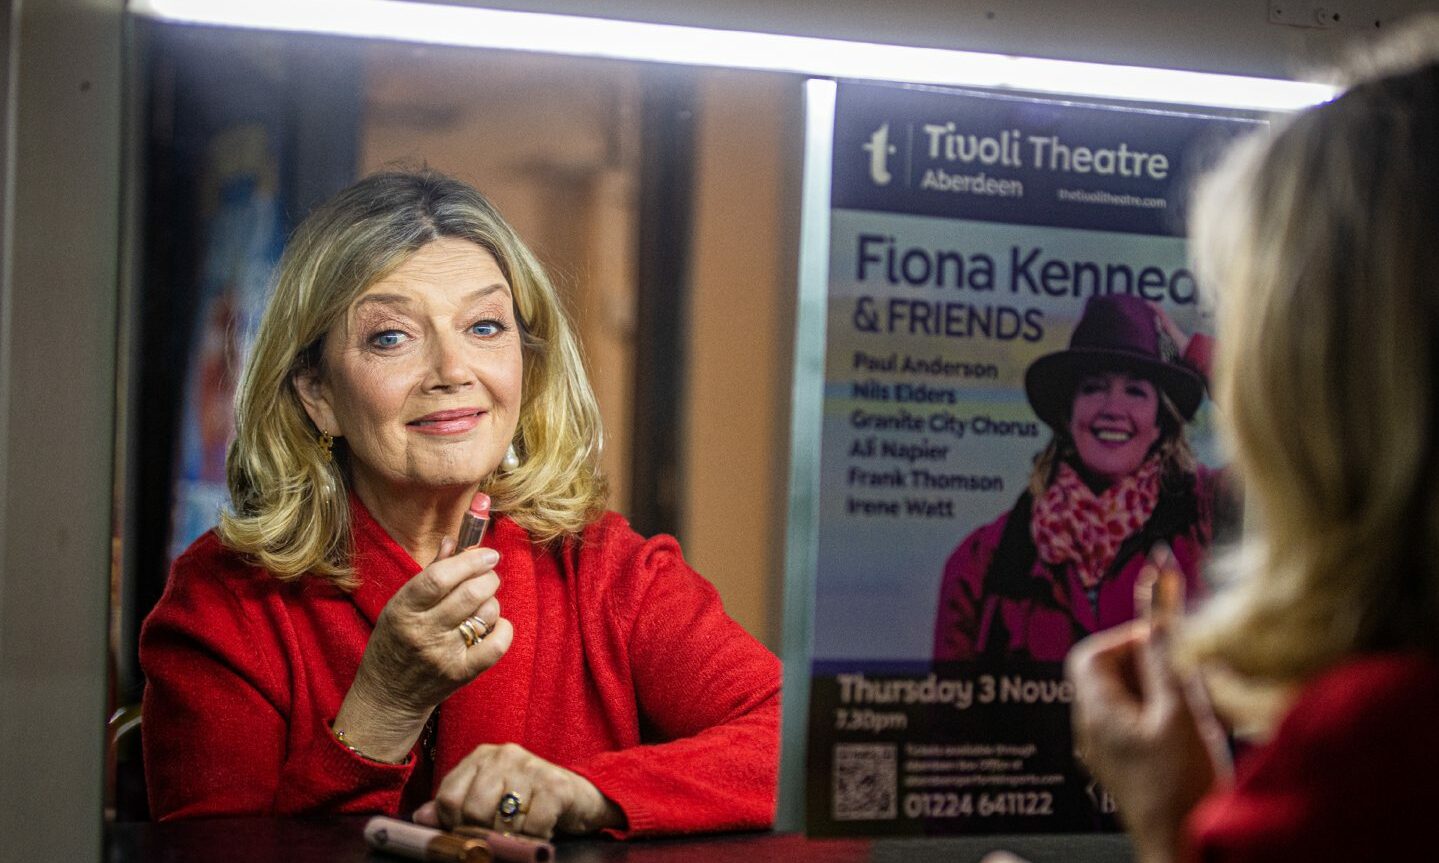 Fiona Kennedy at Tivoli Theatre